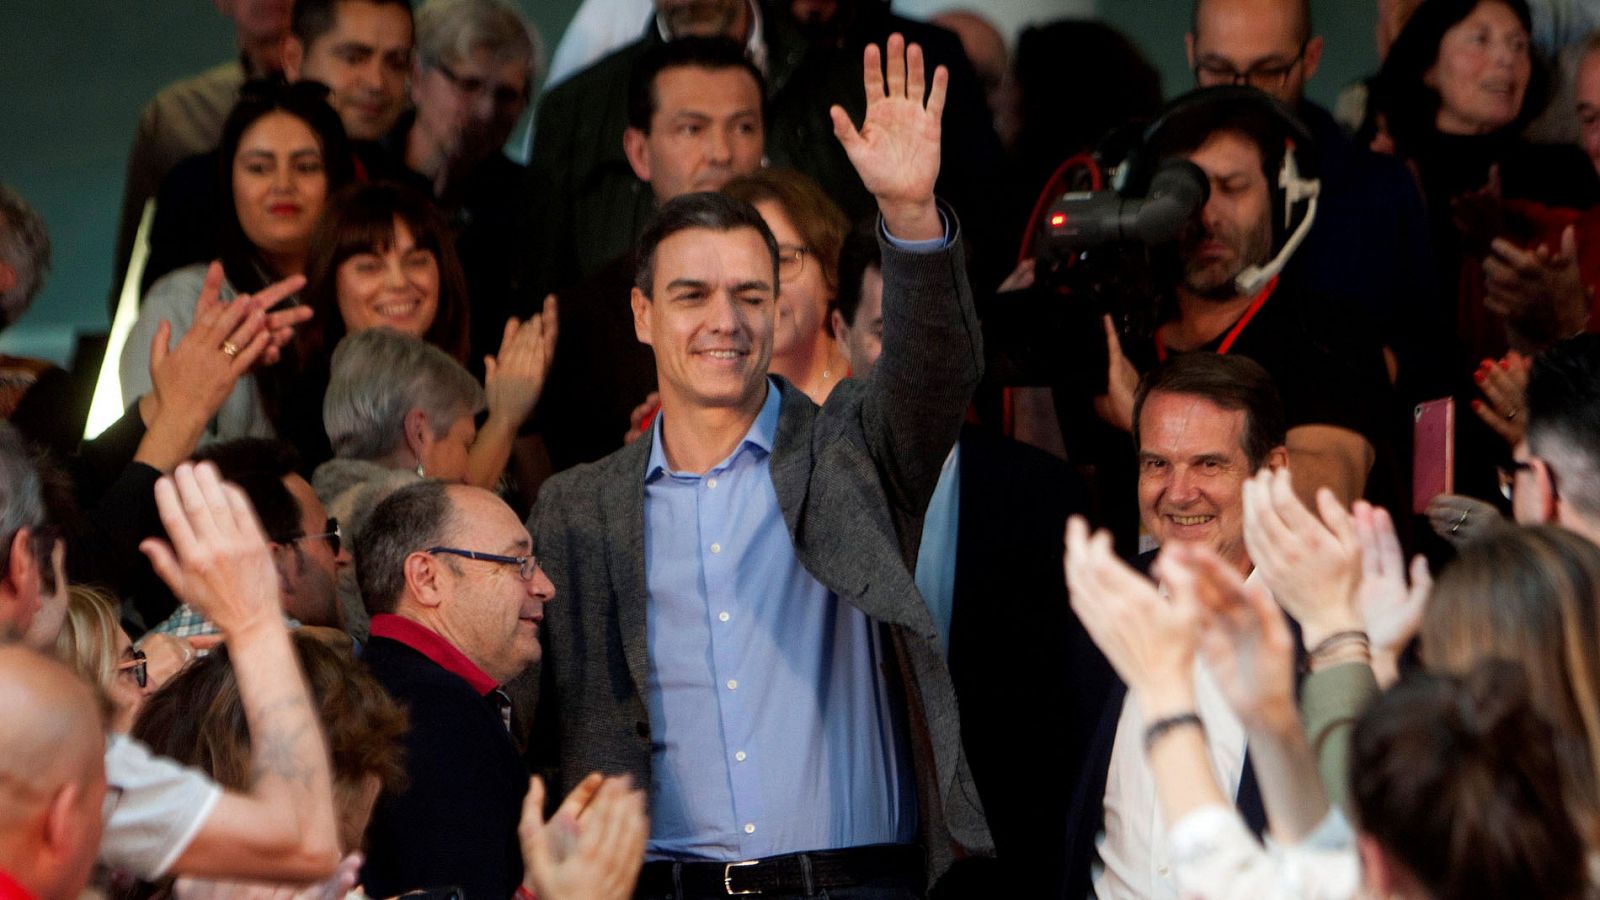 Elecciones generales 2019: Sánchez carga contra PP y Cs por "no luchar" contra los argumentos de la ultraderecha - RTVE.es